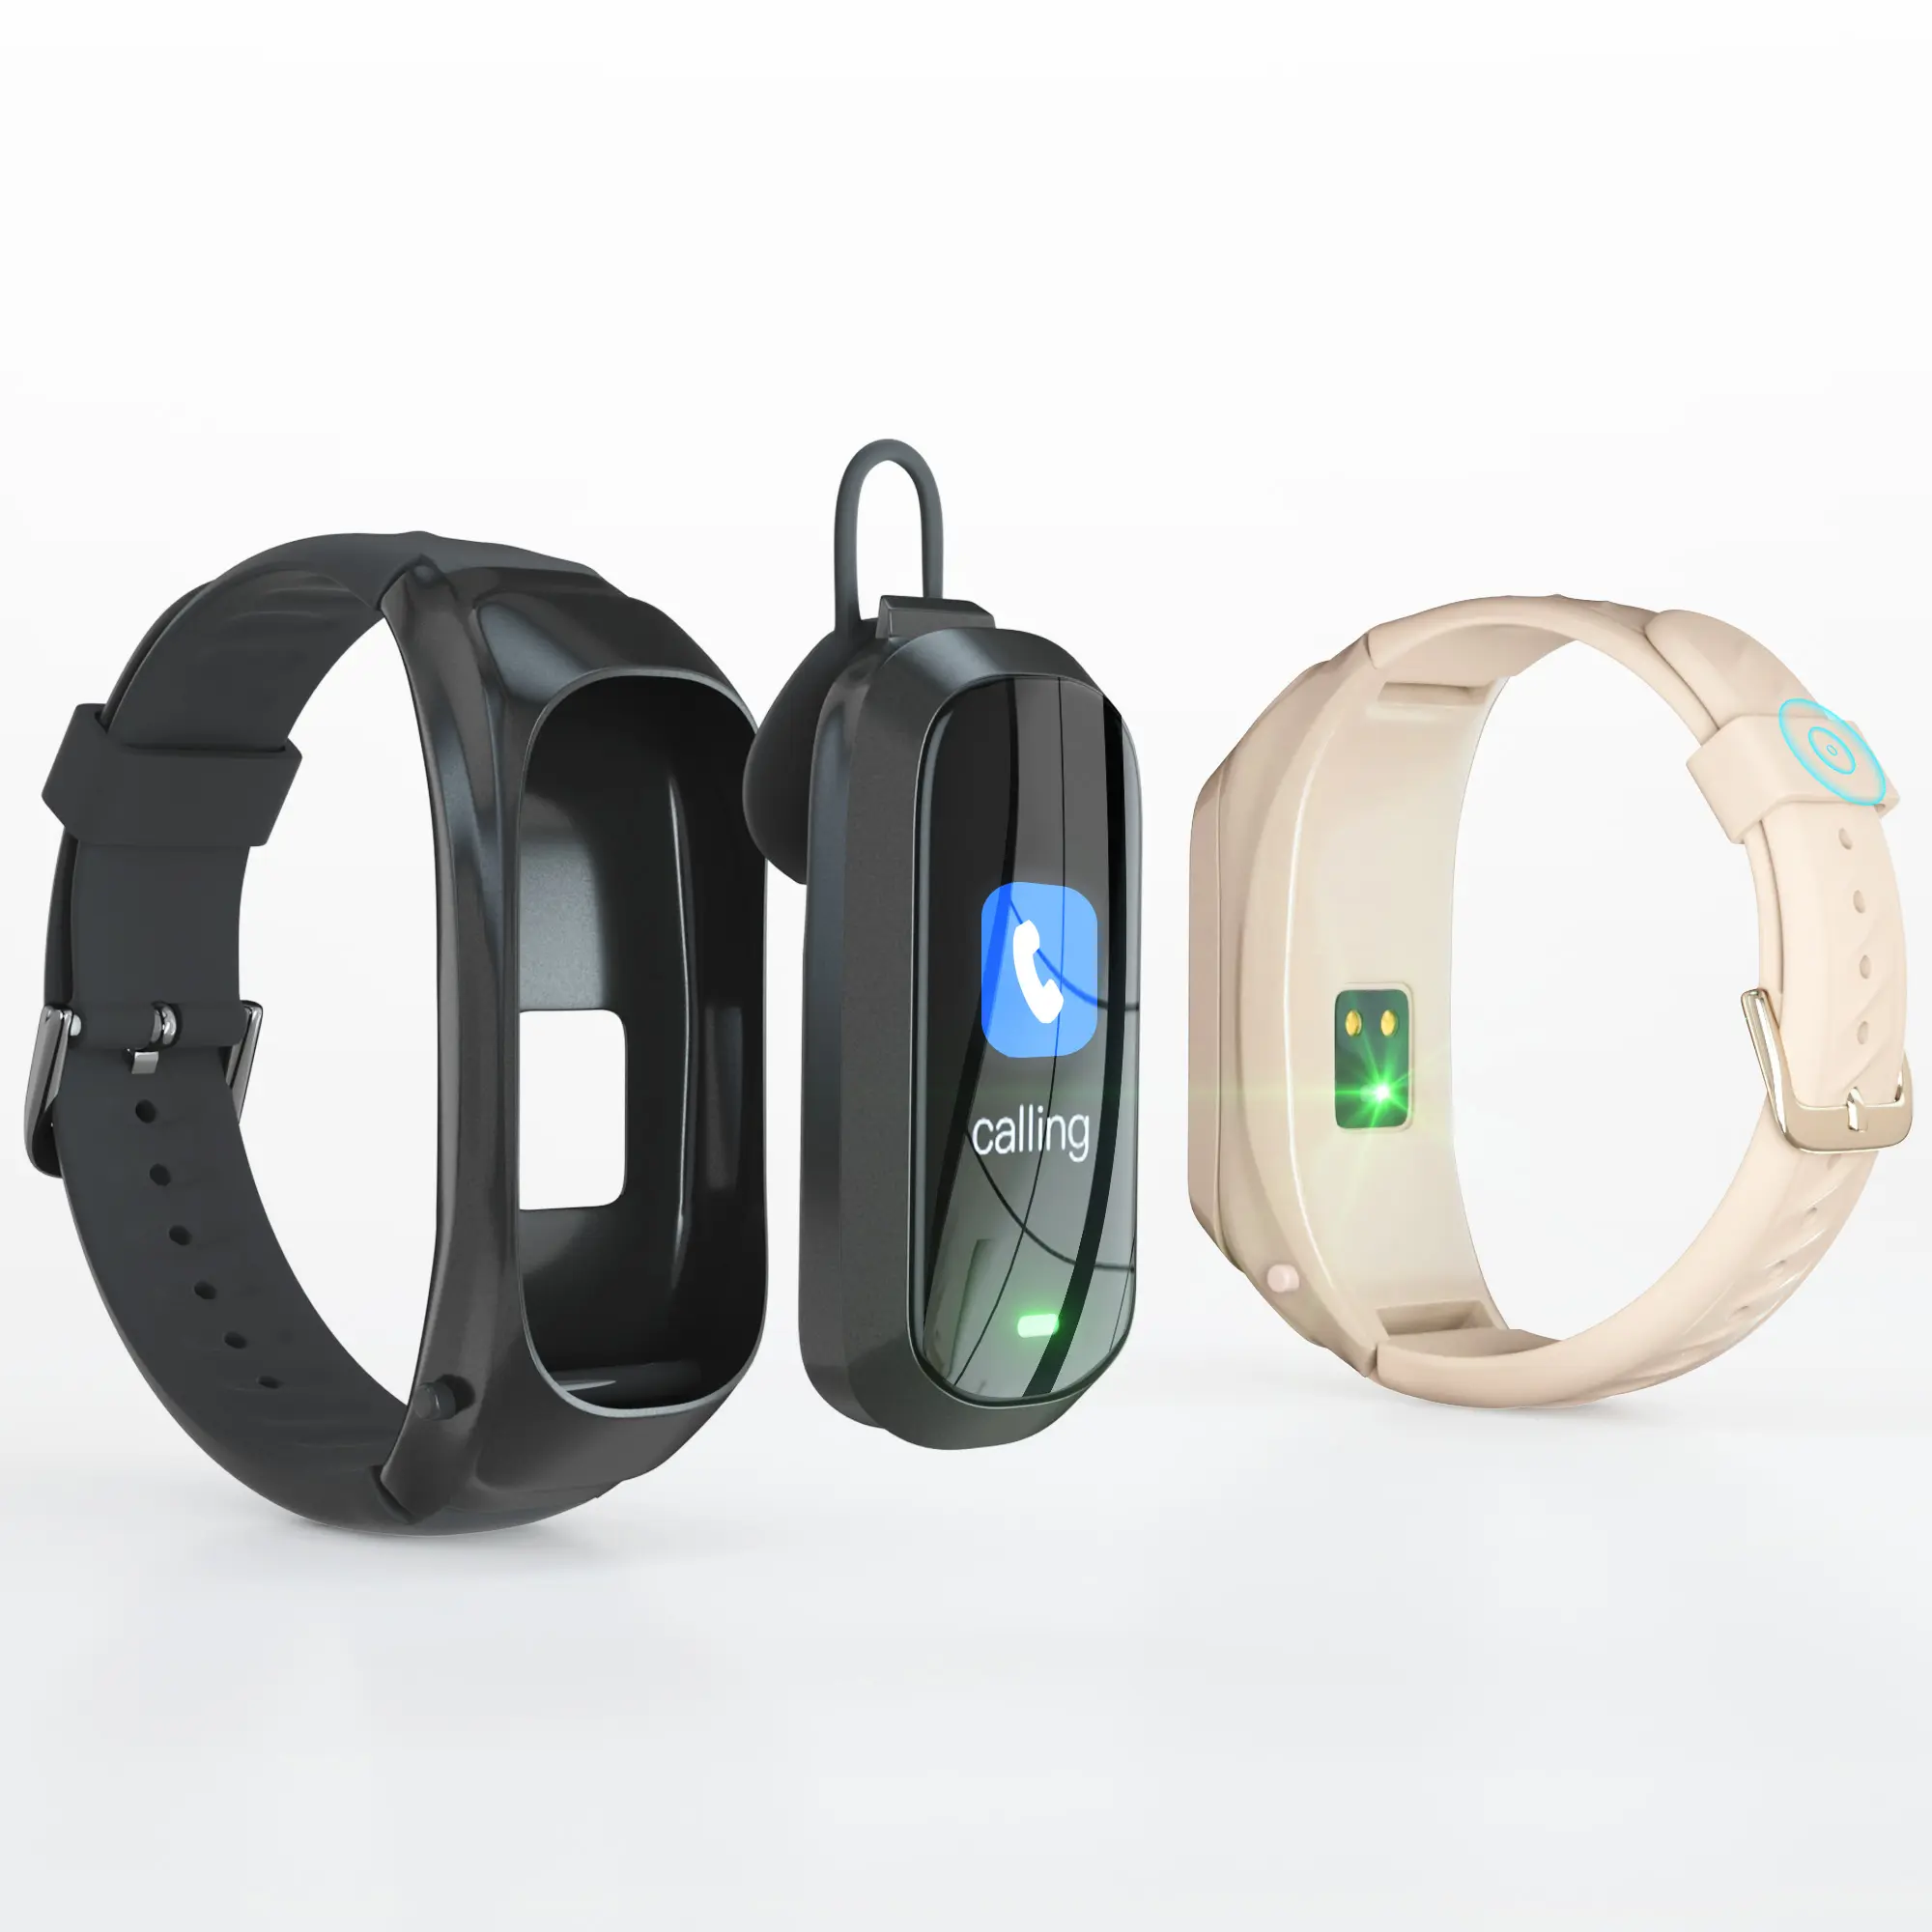 Lemfo-montre connectée thinkcom B6, avec écouteurs, sans fil, pour appels téléphoniques, collection Offre Spéciale, livraison gratuite, électronique, nouveau